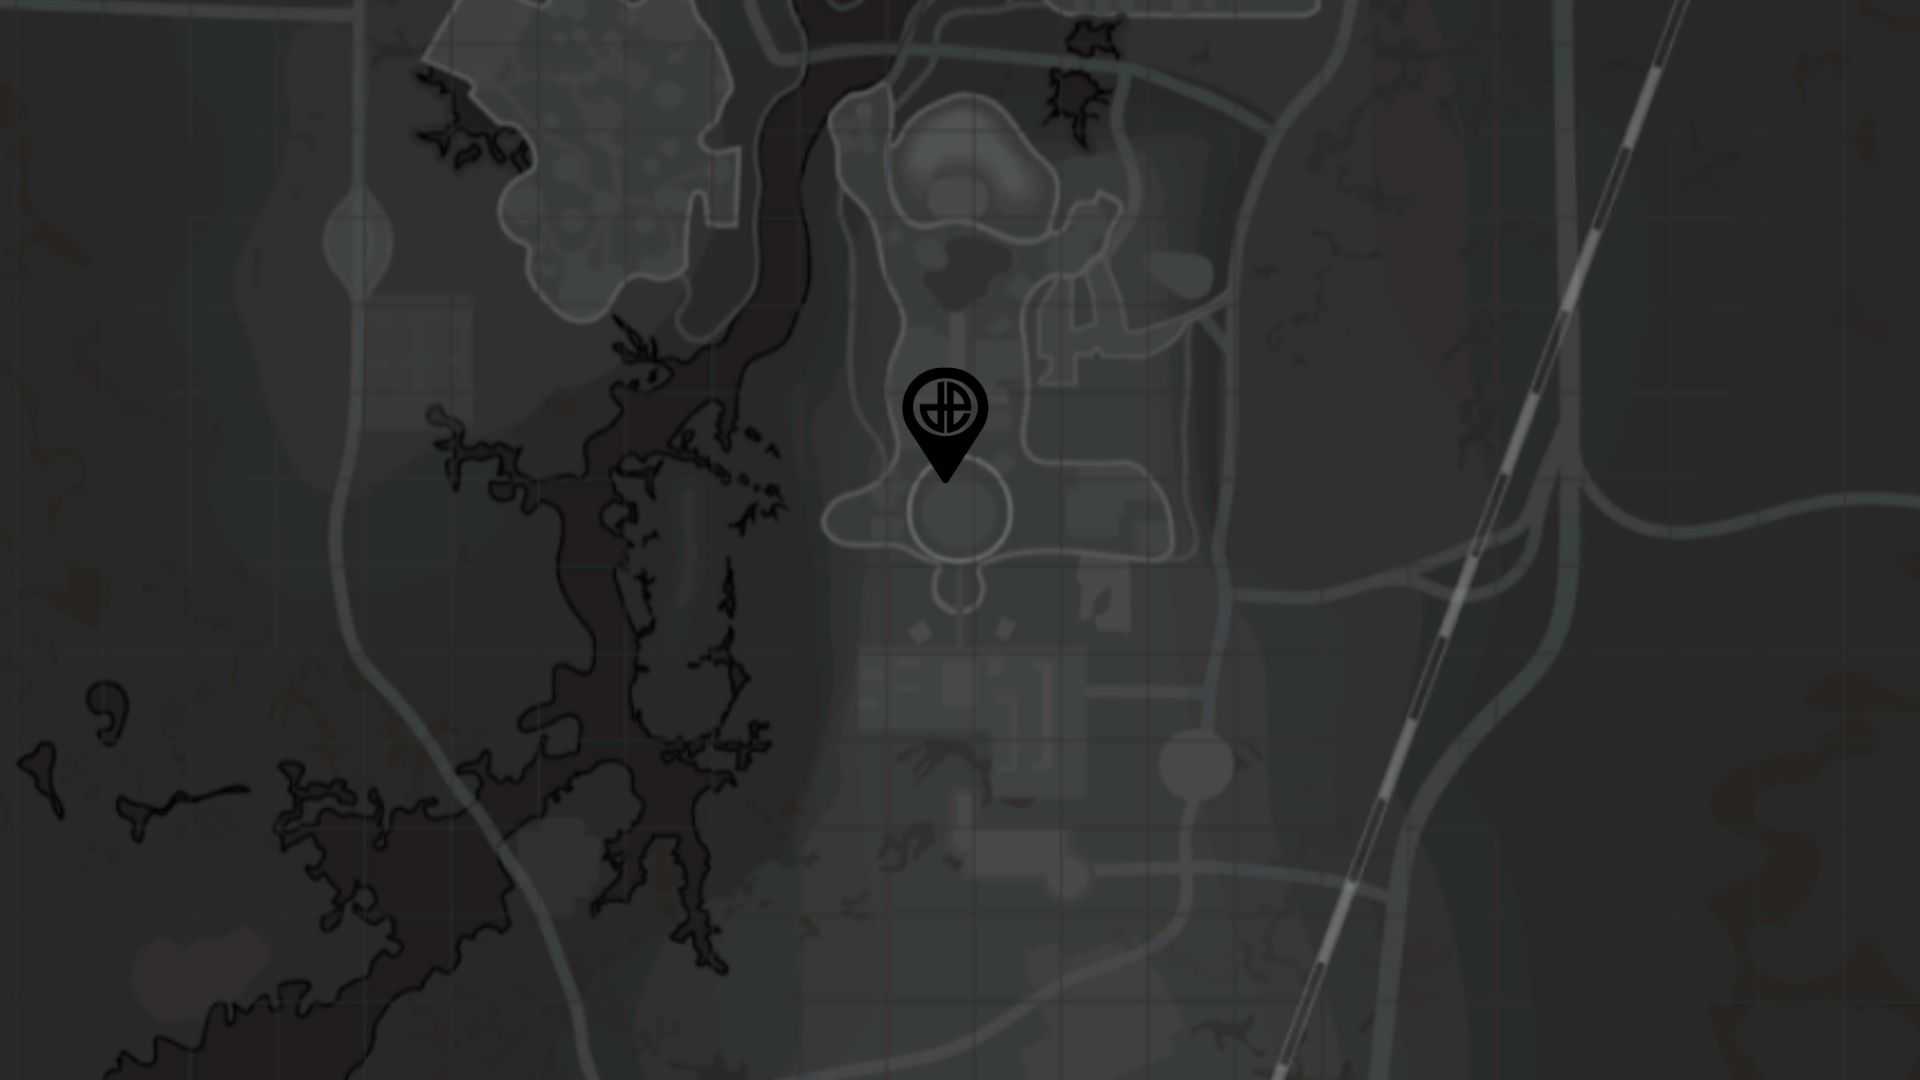 Splattercanon location in Fallout 4